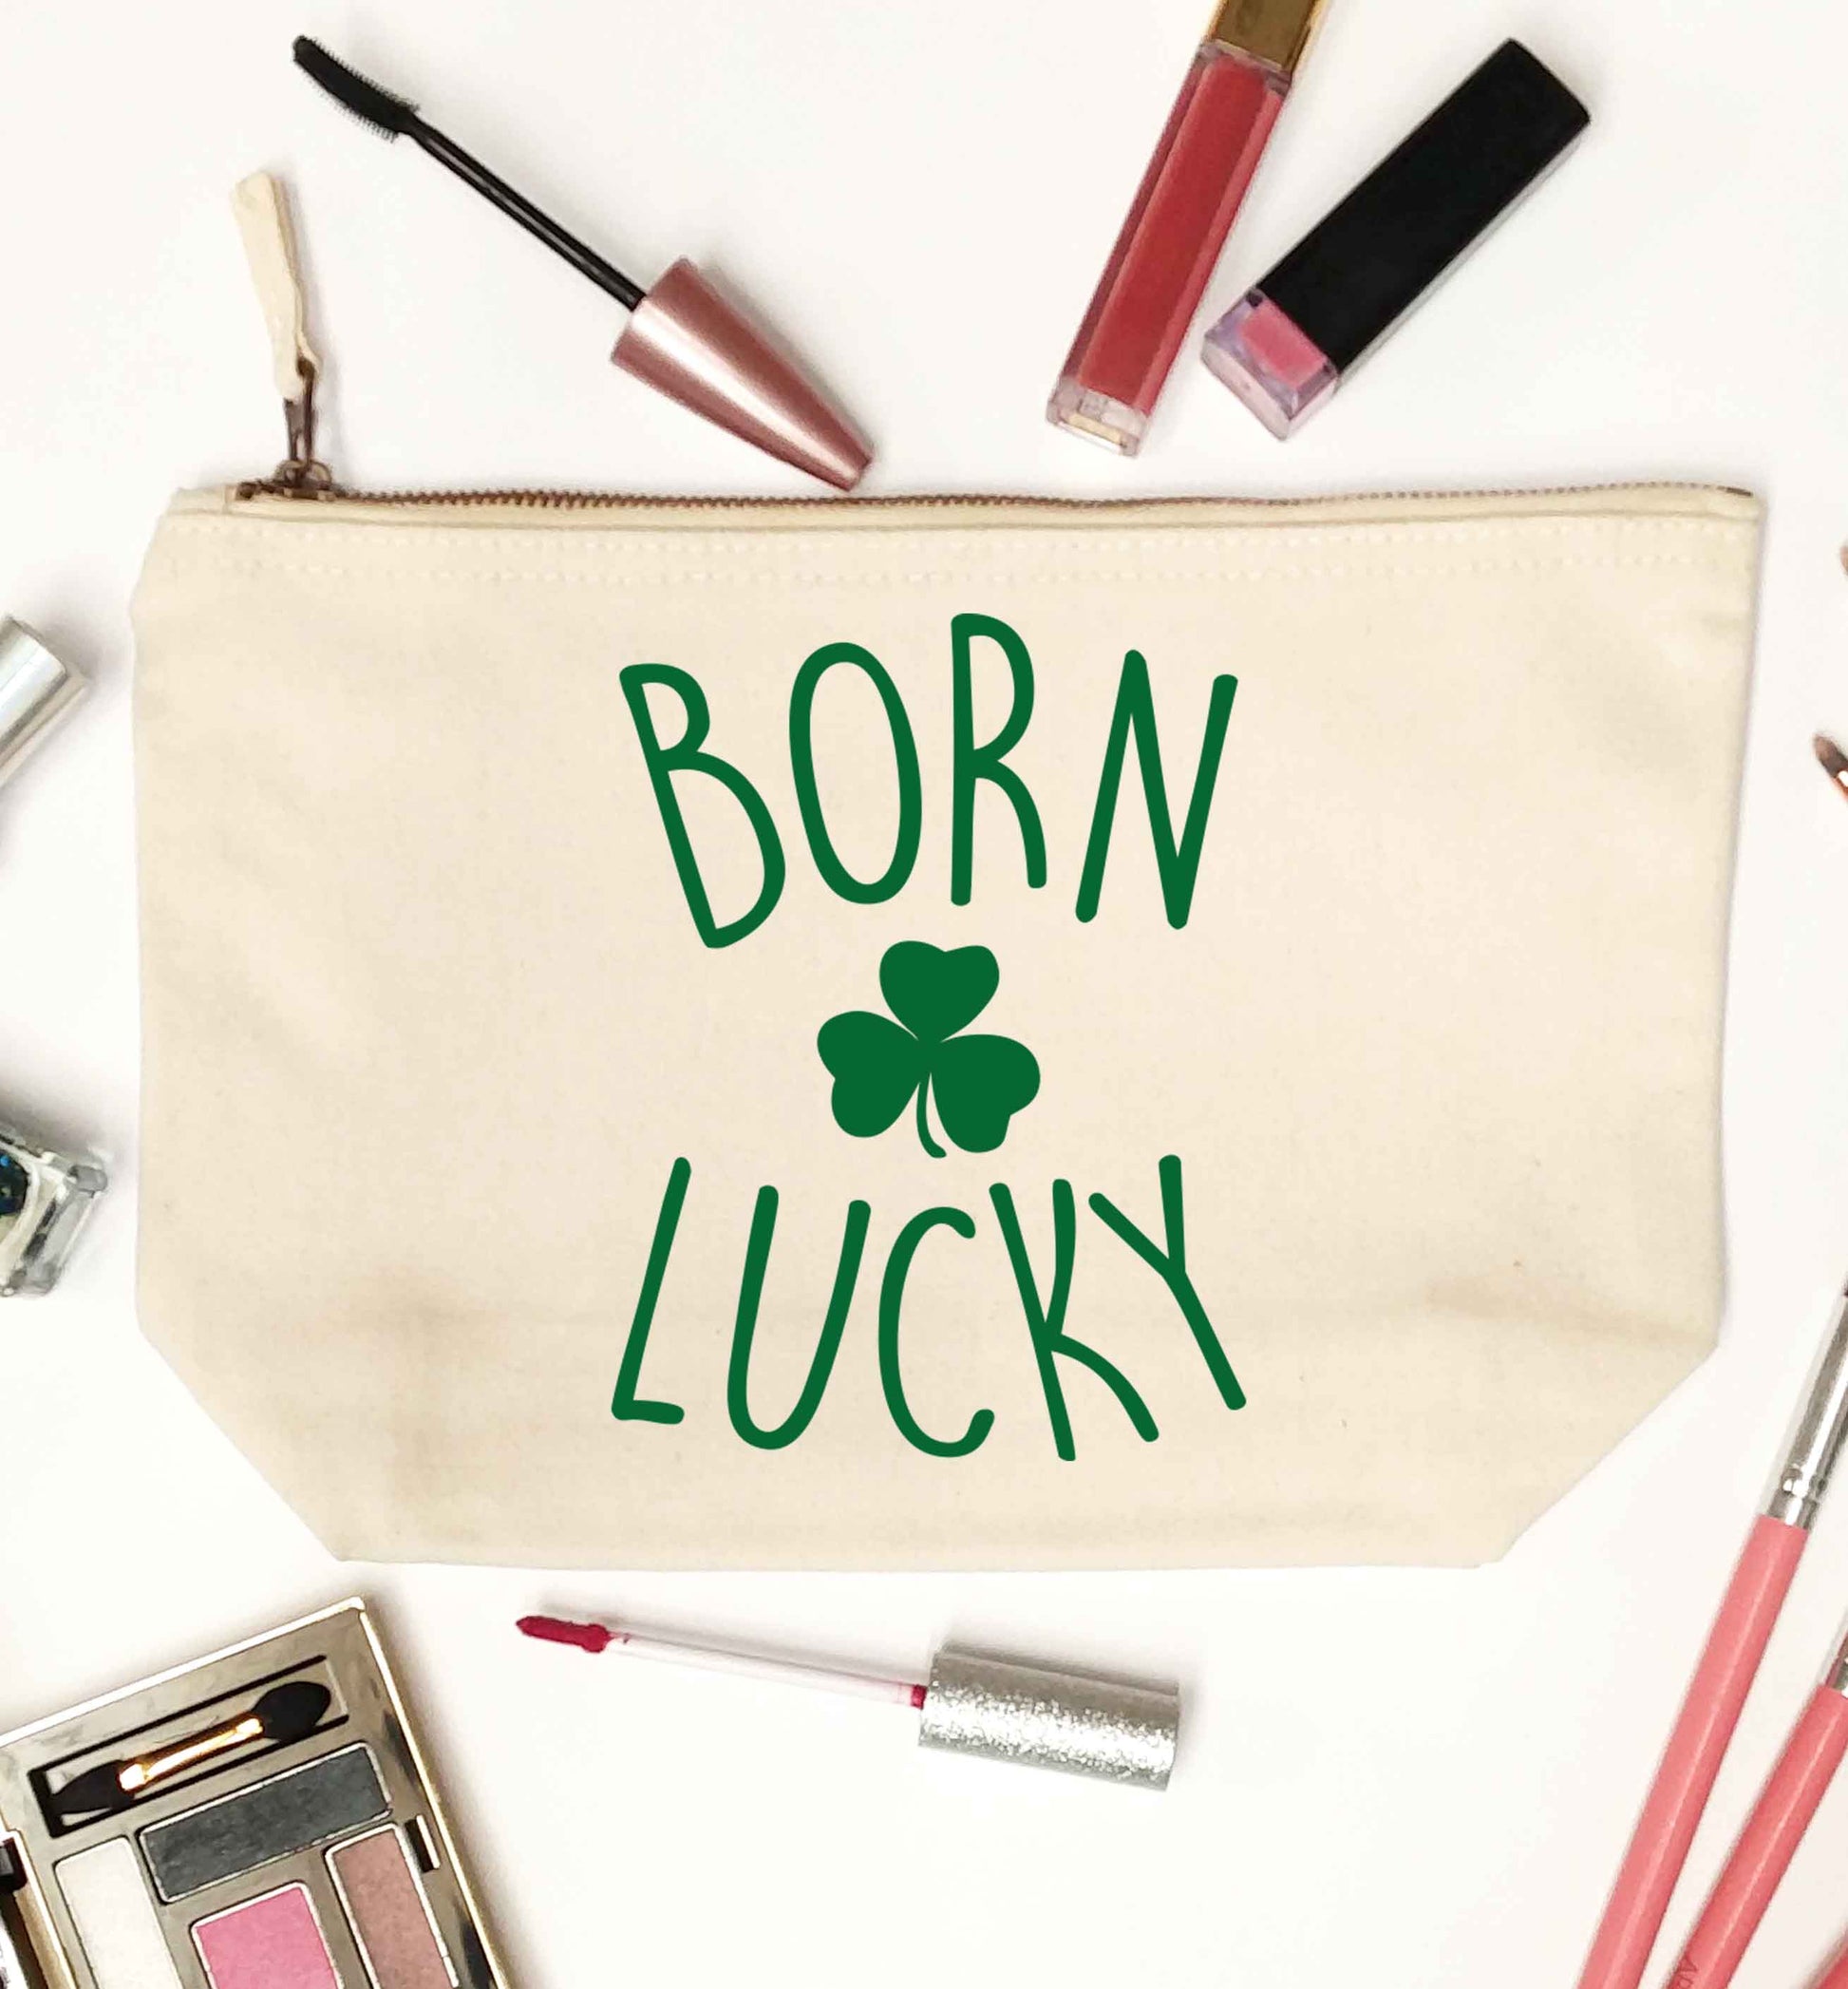  Born Lucky natural makeup bag